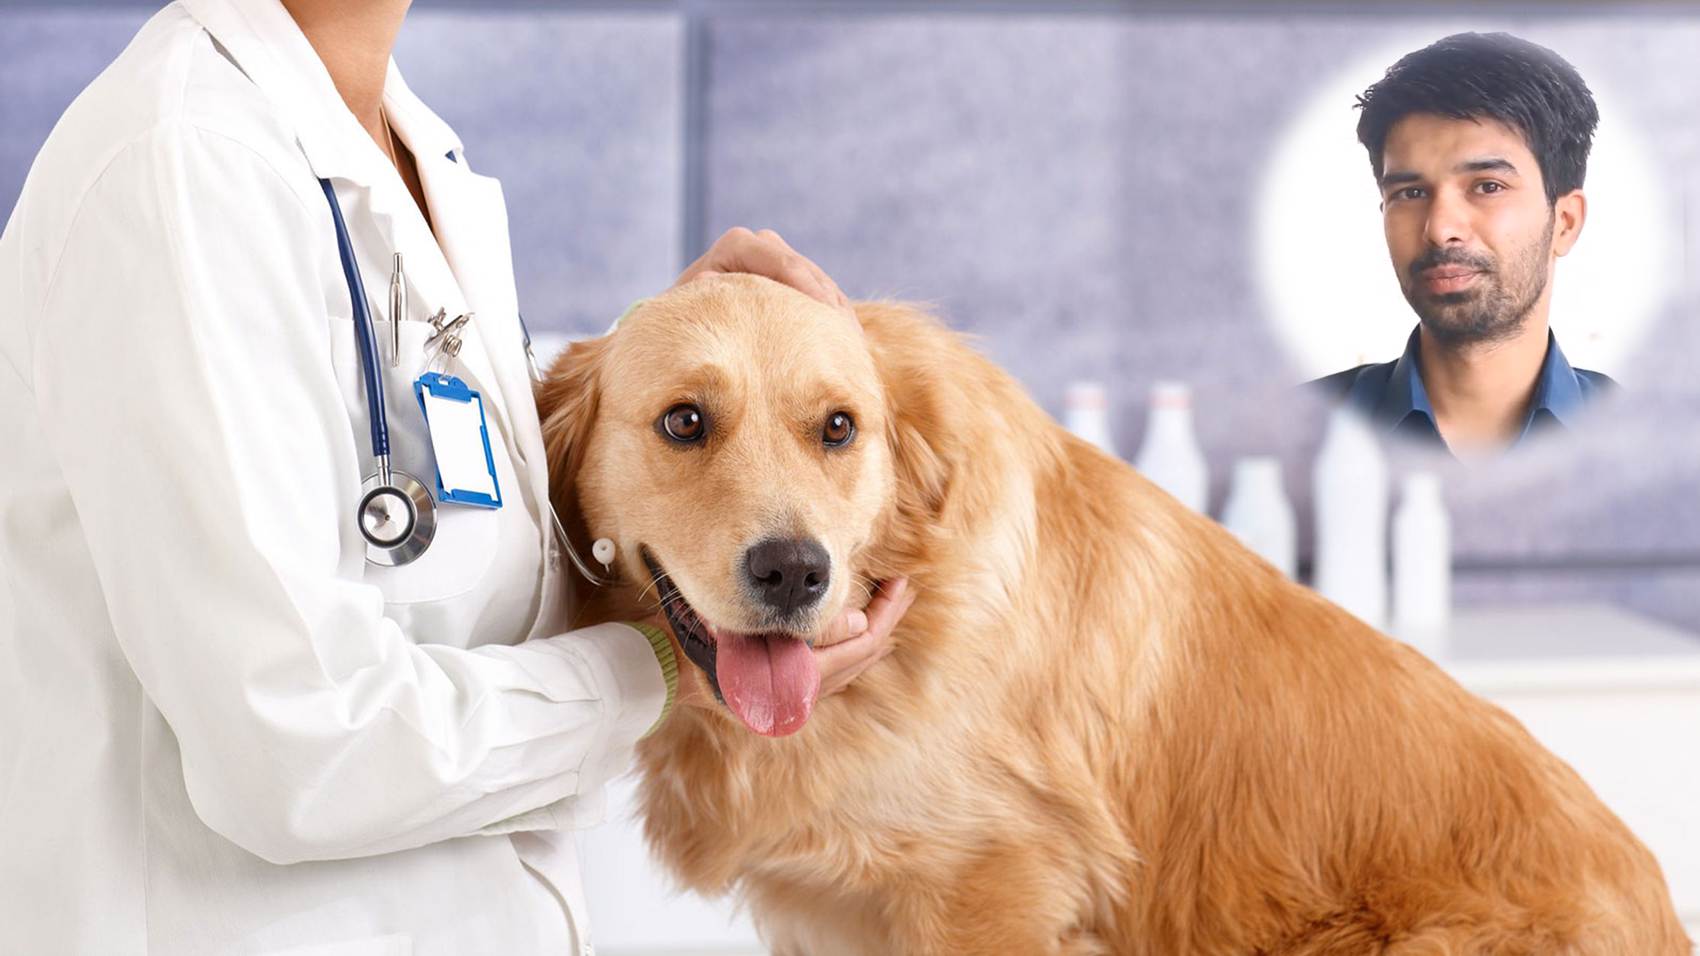 Career in Veterinary Medicine